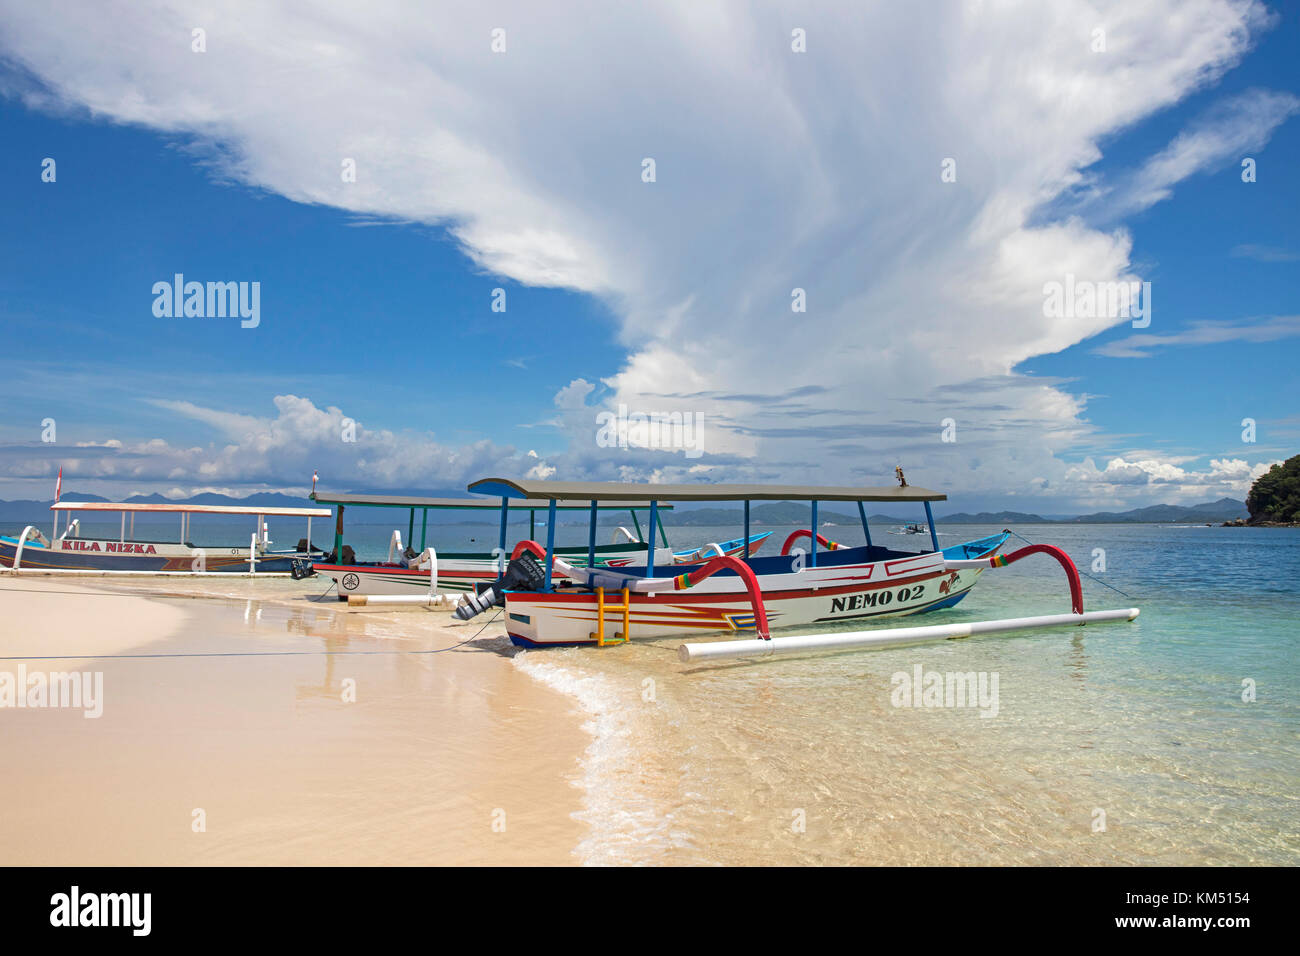 Outrigger embarcaciones turísticas de playa tropical idílico del islote gili nanggu, parte de las Islas Gili, isla Lombok, Lesser Sunda Islands, indonesia Foto de stock